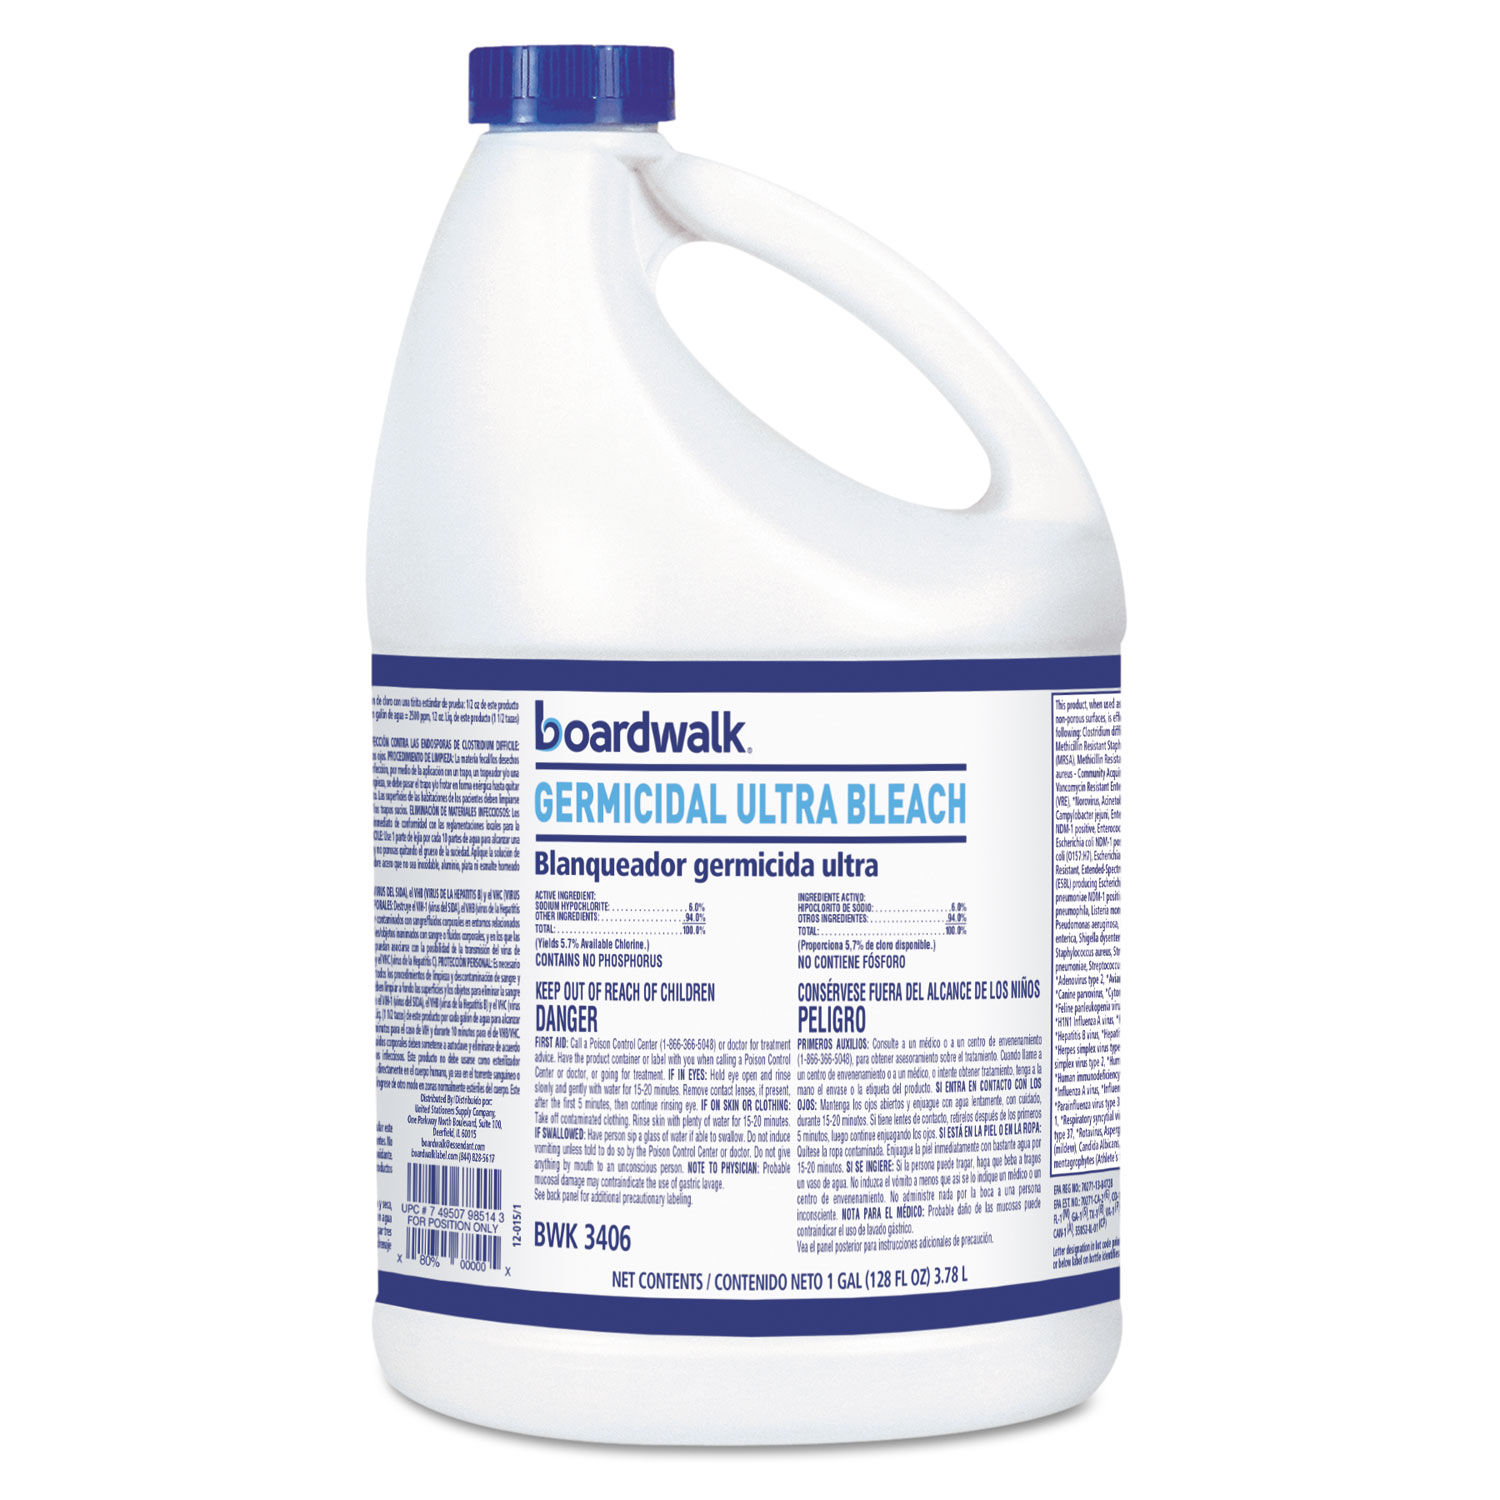  Boardwalk 11007195043 Ultra Germicidal Bleach, 1 Gallon Bottle, 6/carton (BWK3406) 